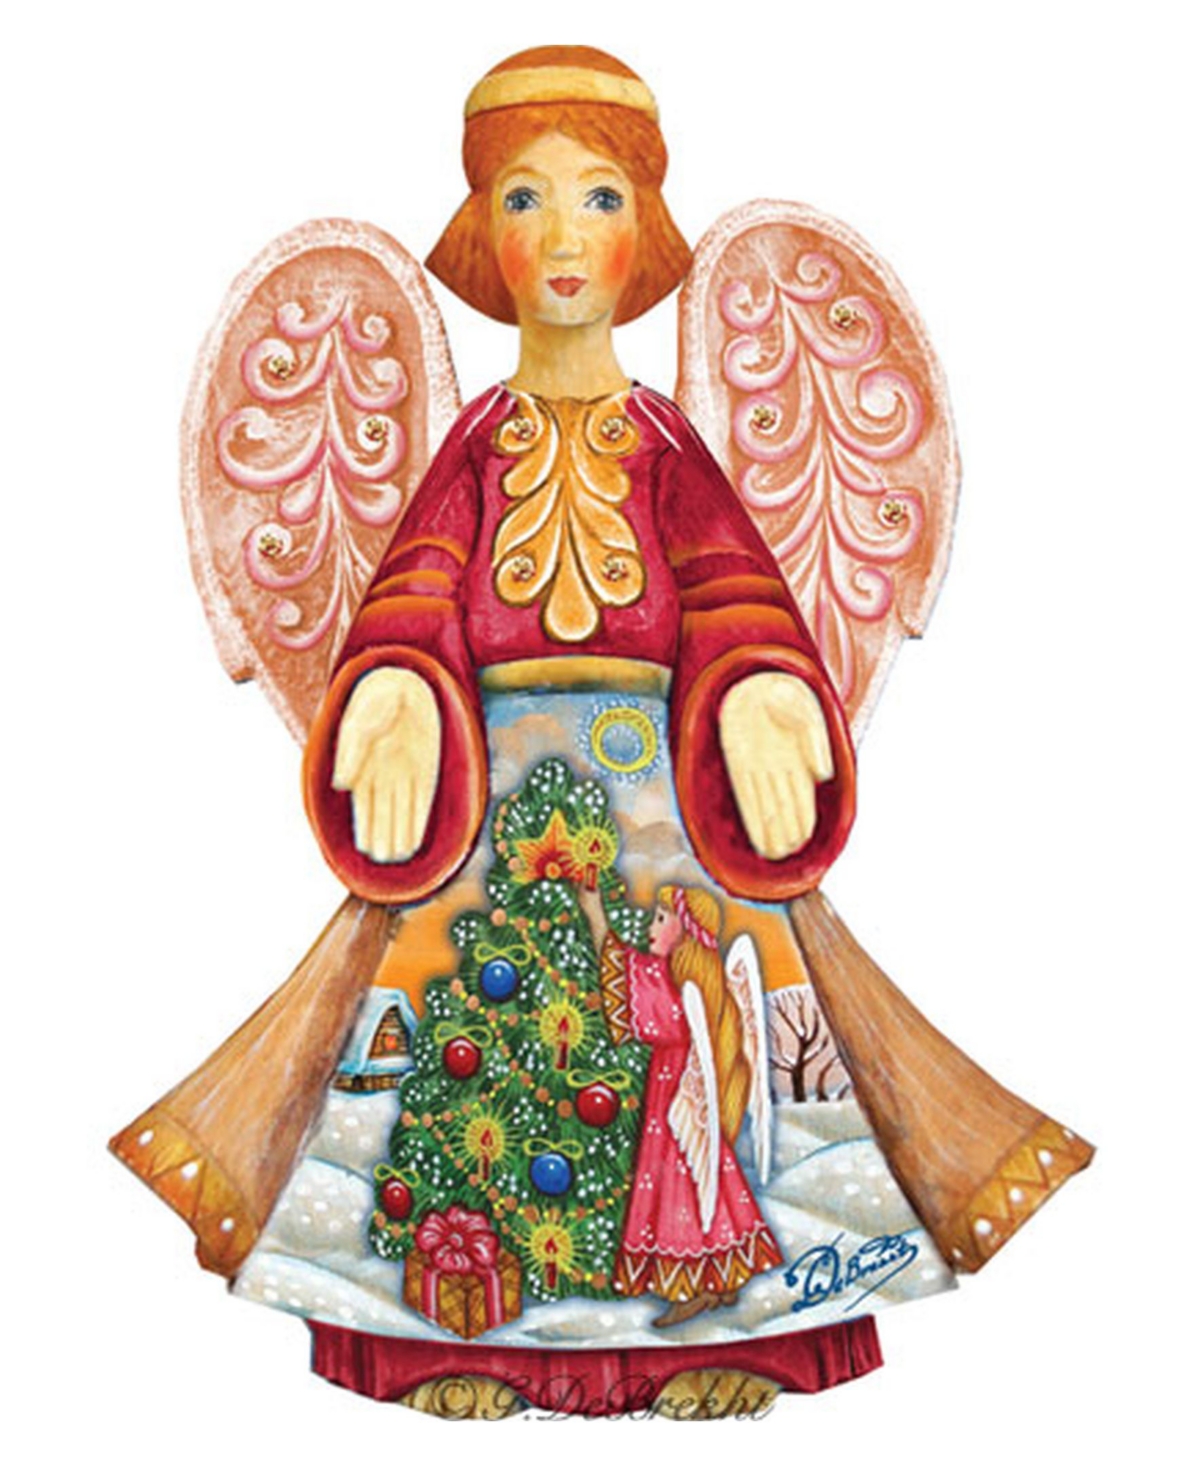 Christmas Tree Angel Figurine - Multi